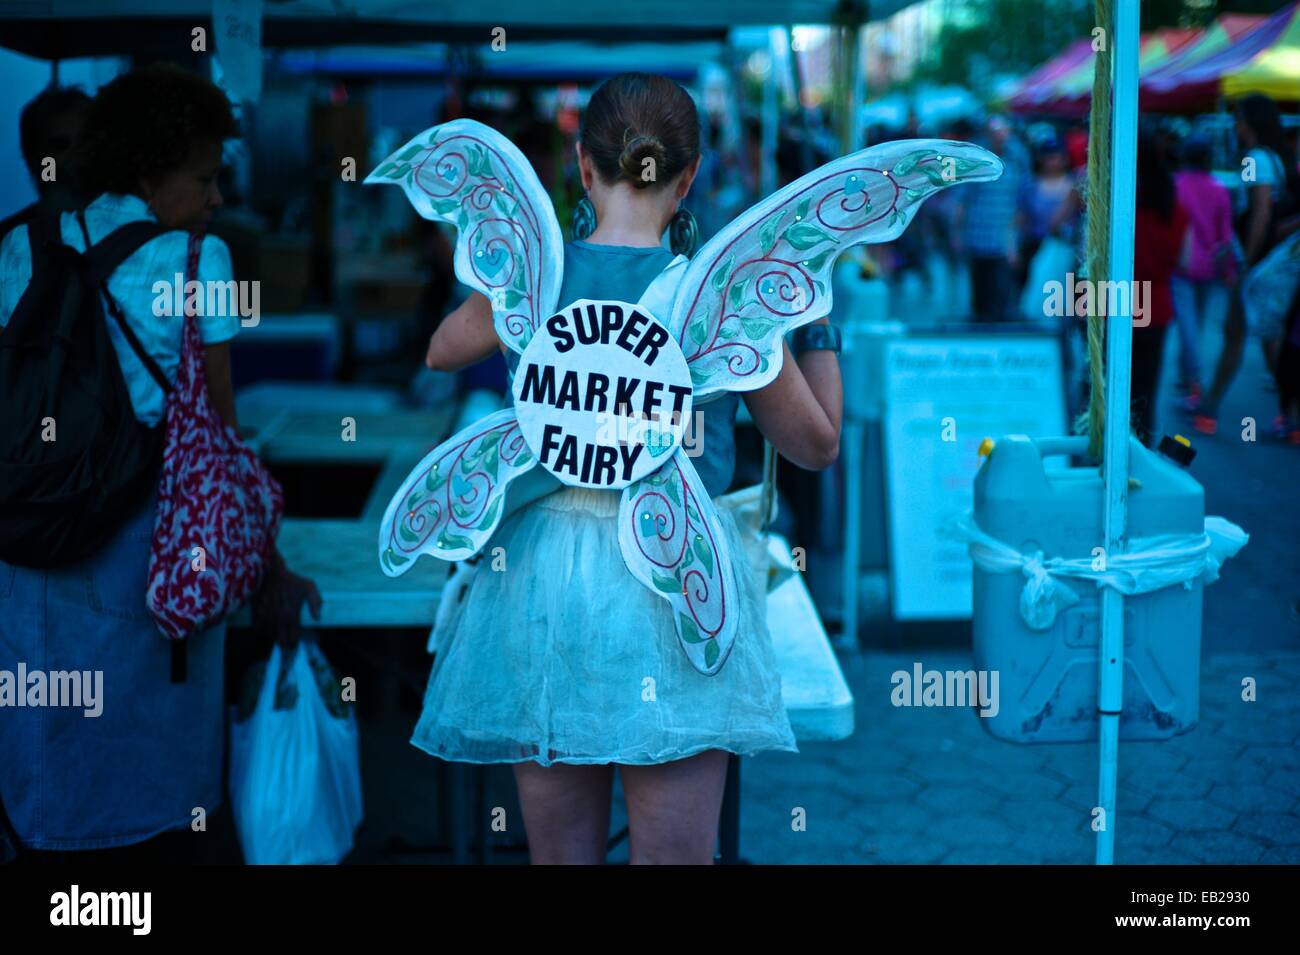 Super market fairy at Union Square's farmers market Stock Photo